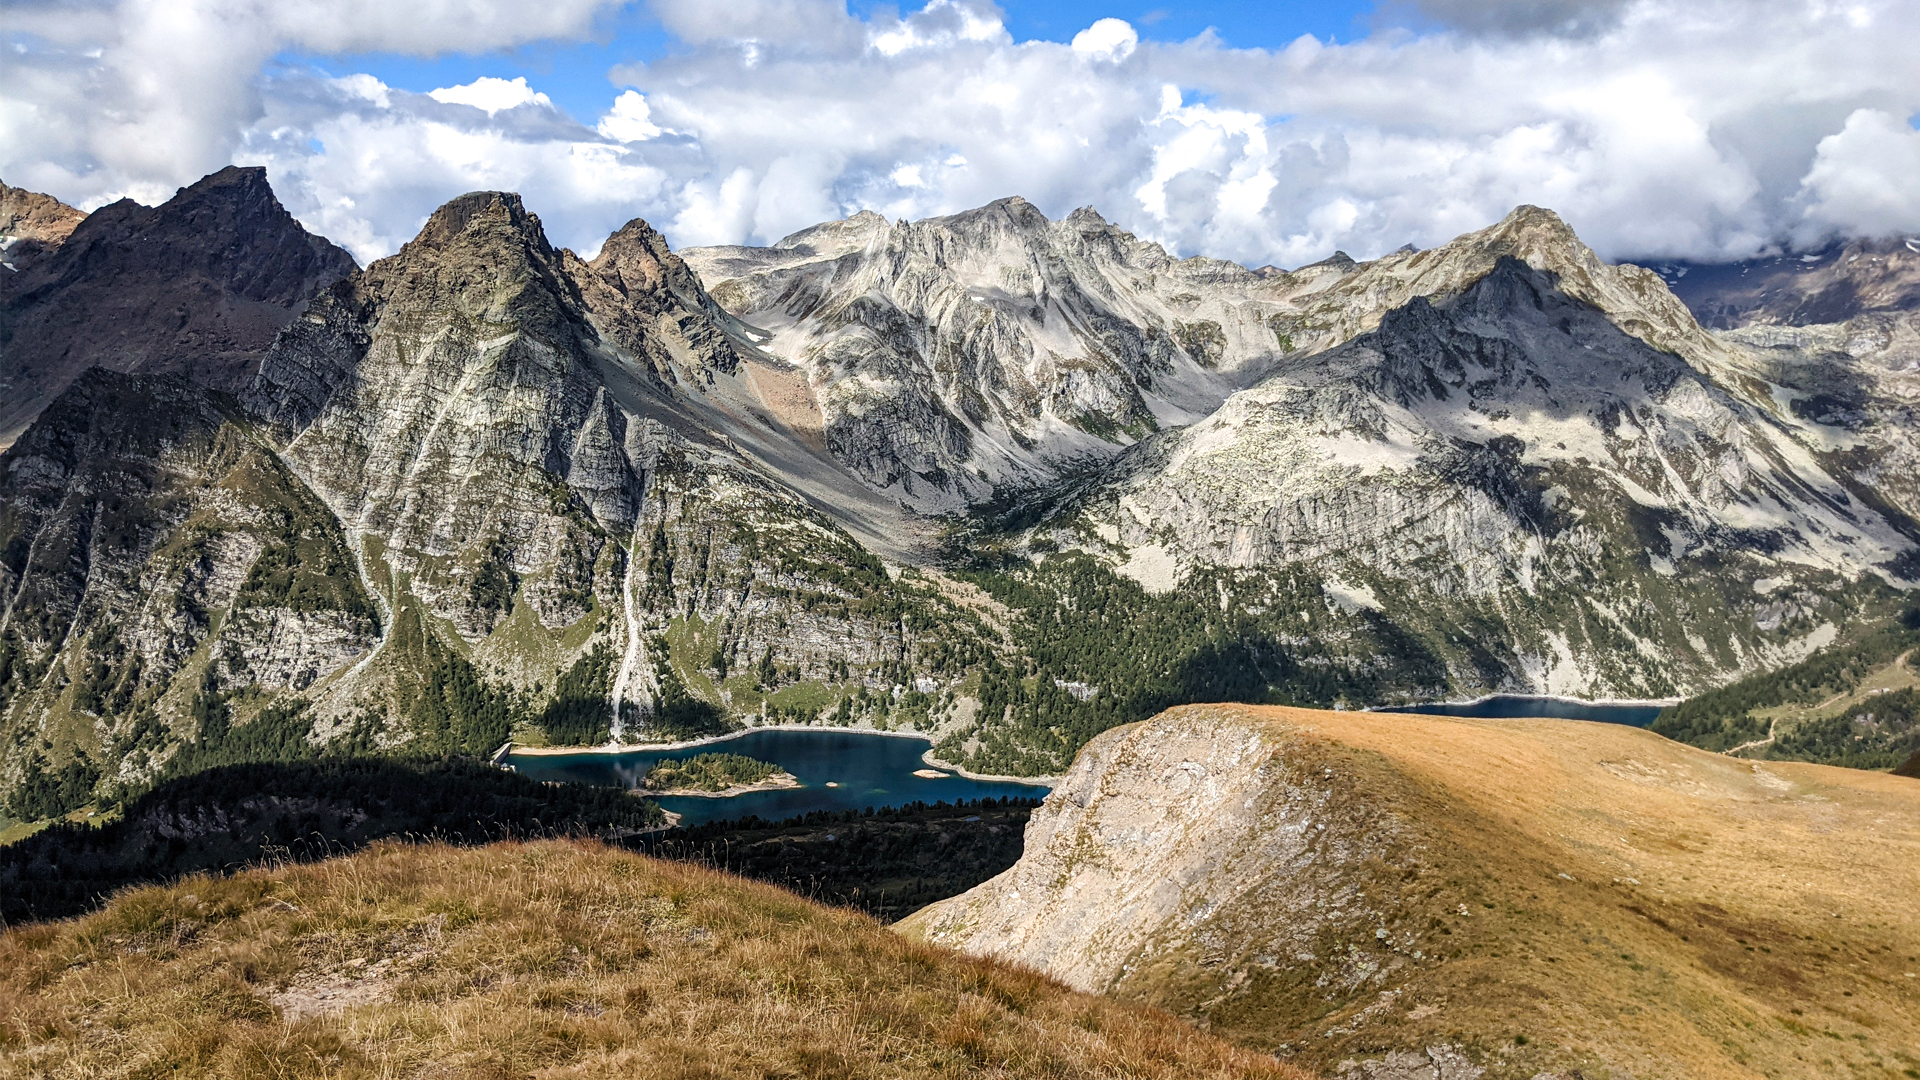 Parco Naturale Alpe Veglia e Alpe Devero, itinerarium